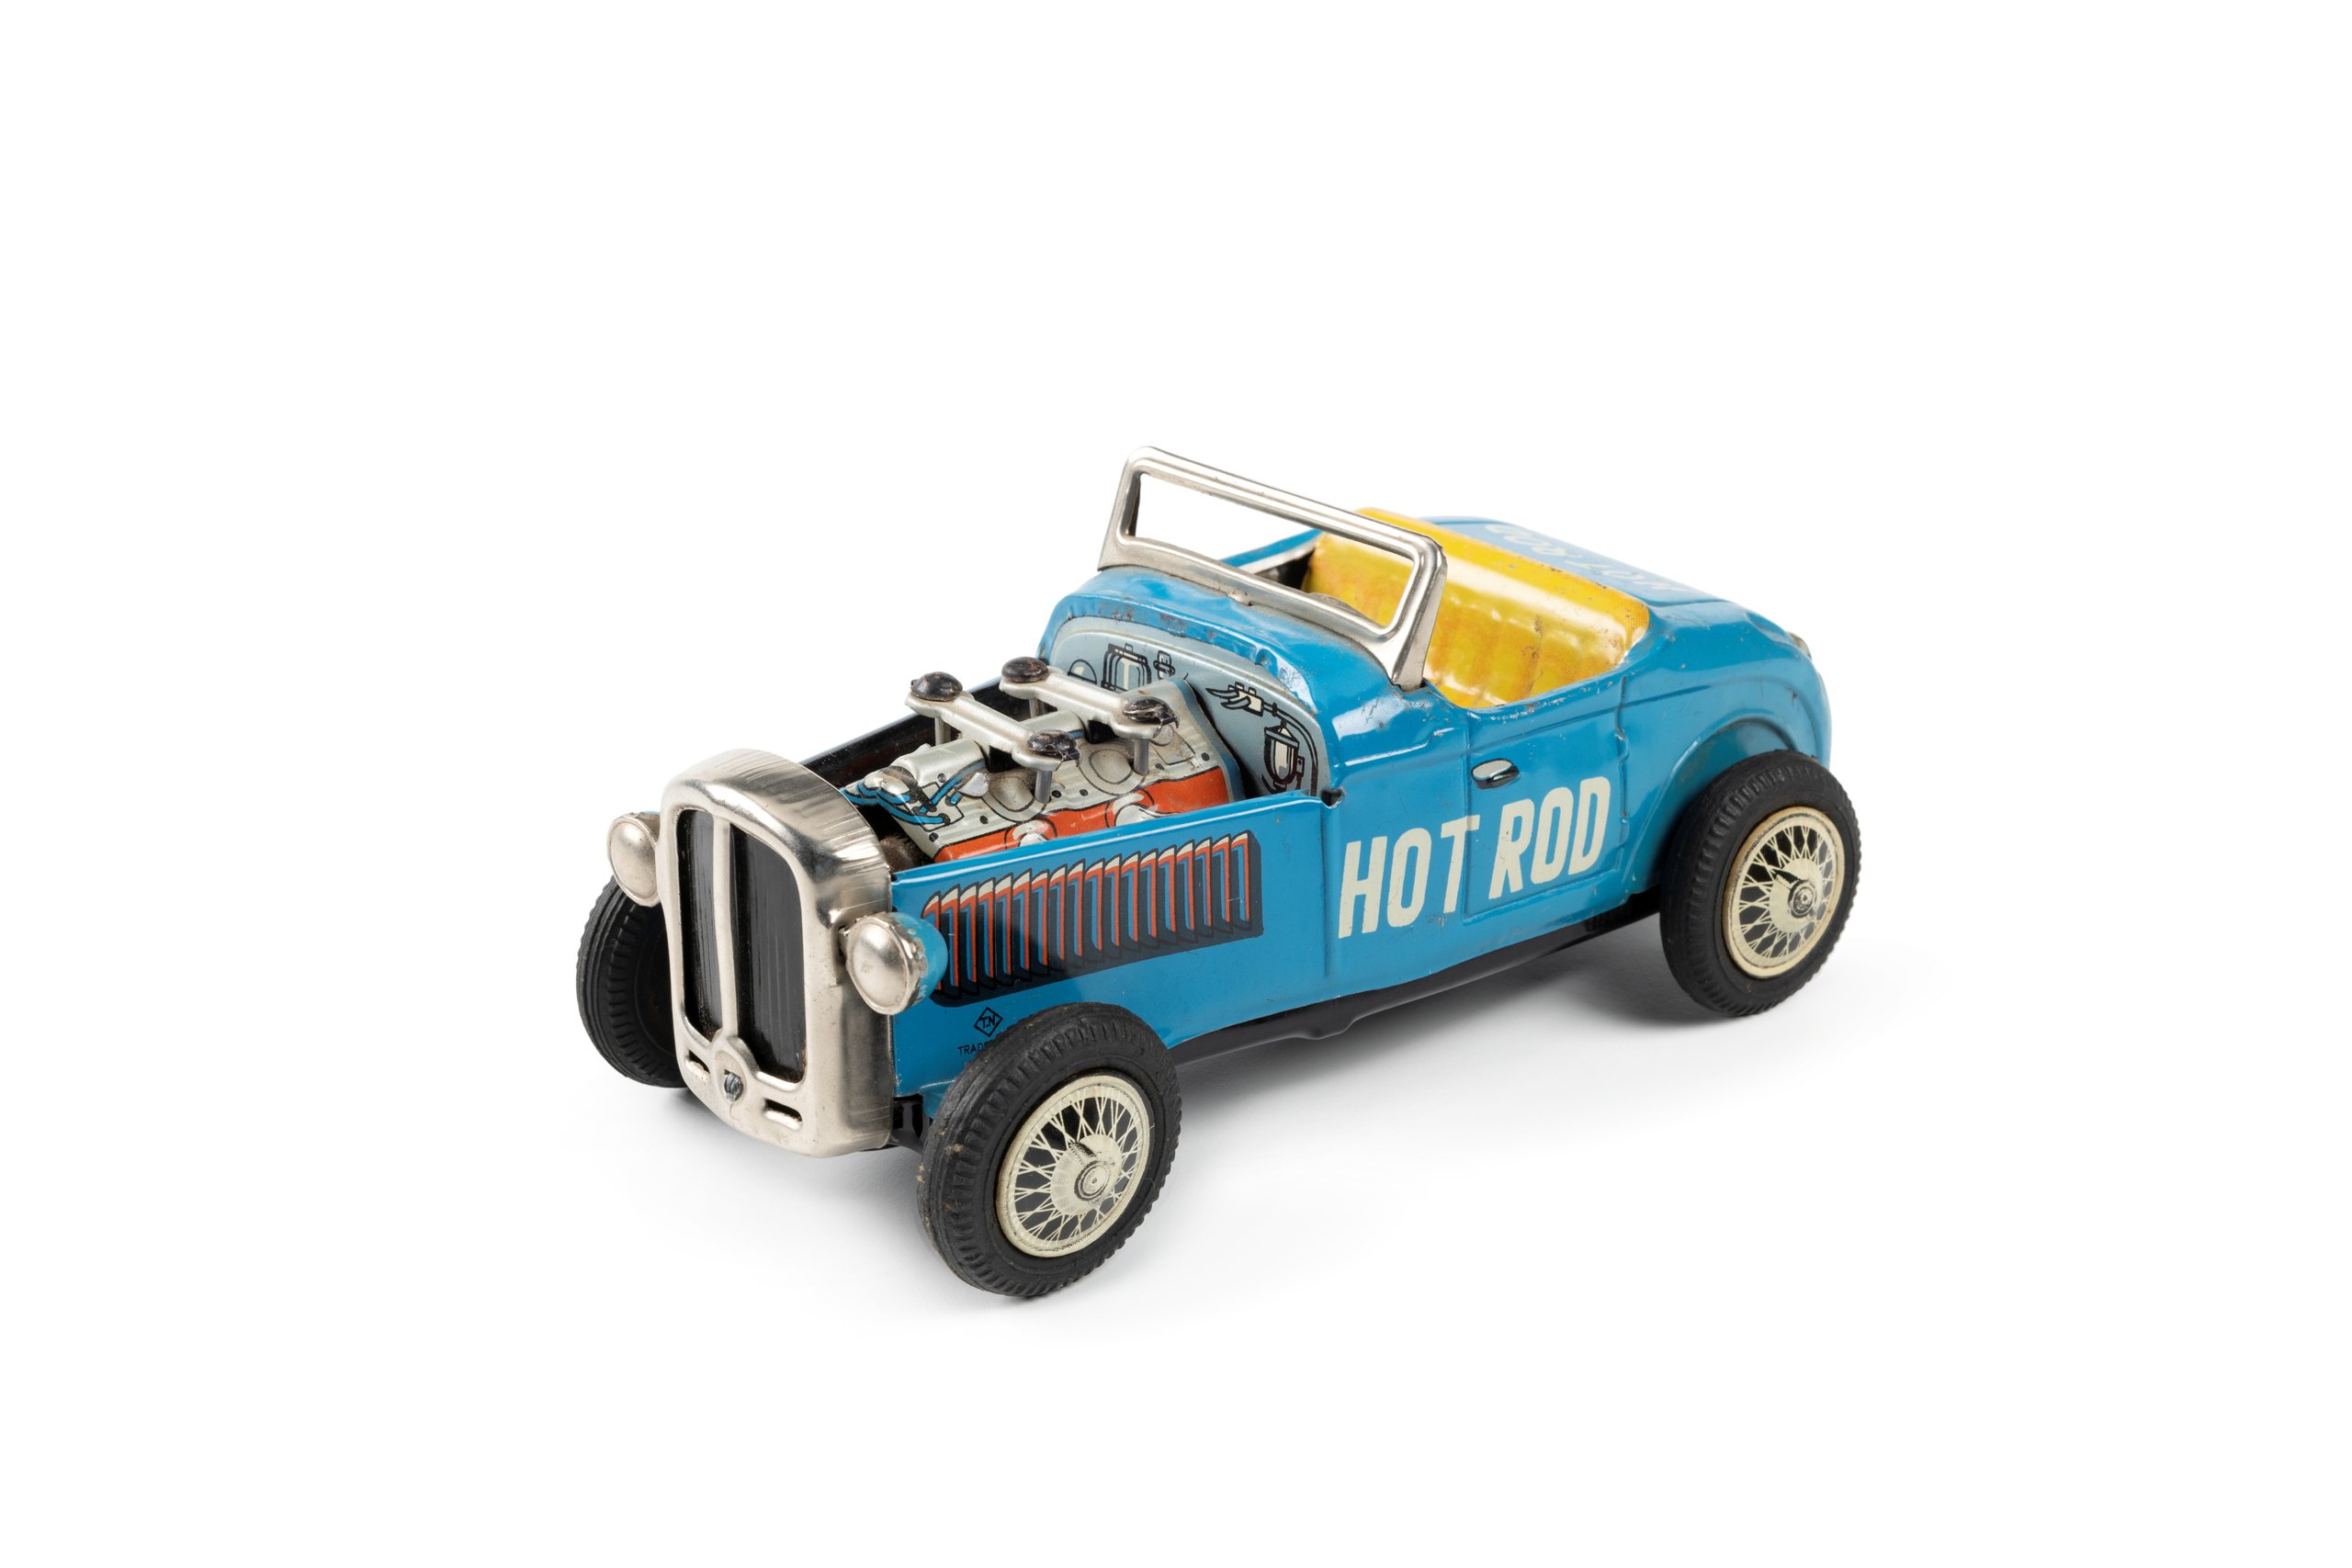 Toy car 'Century Hot Rod' made by Nomura